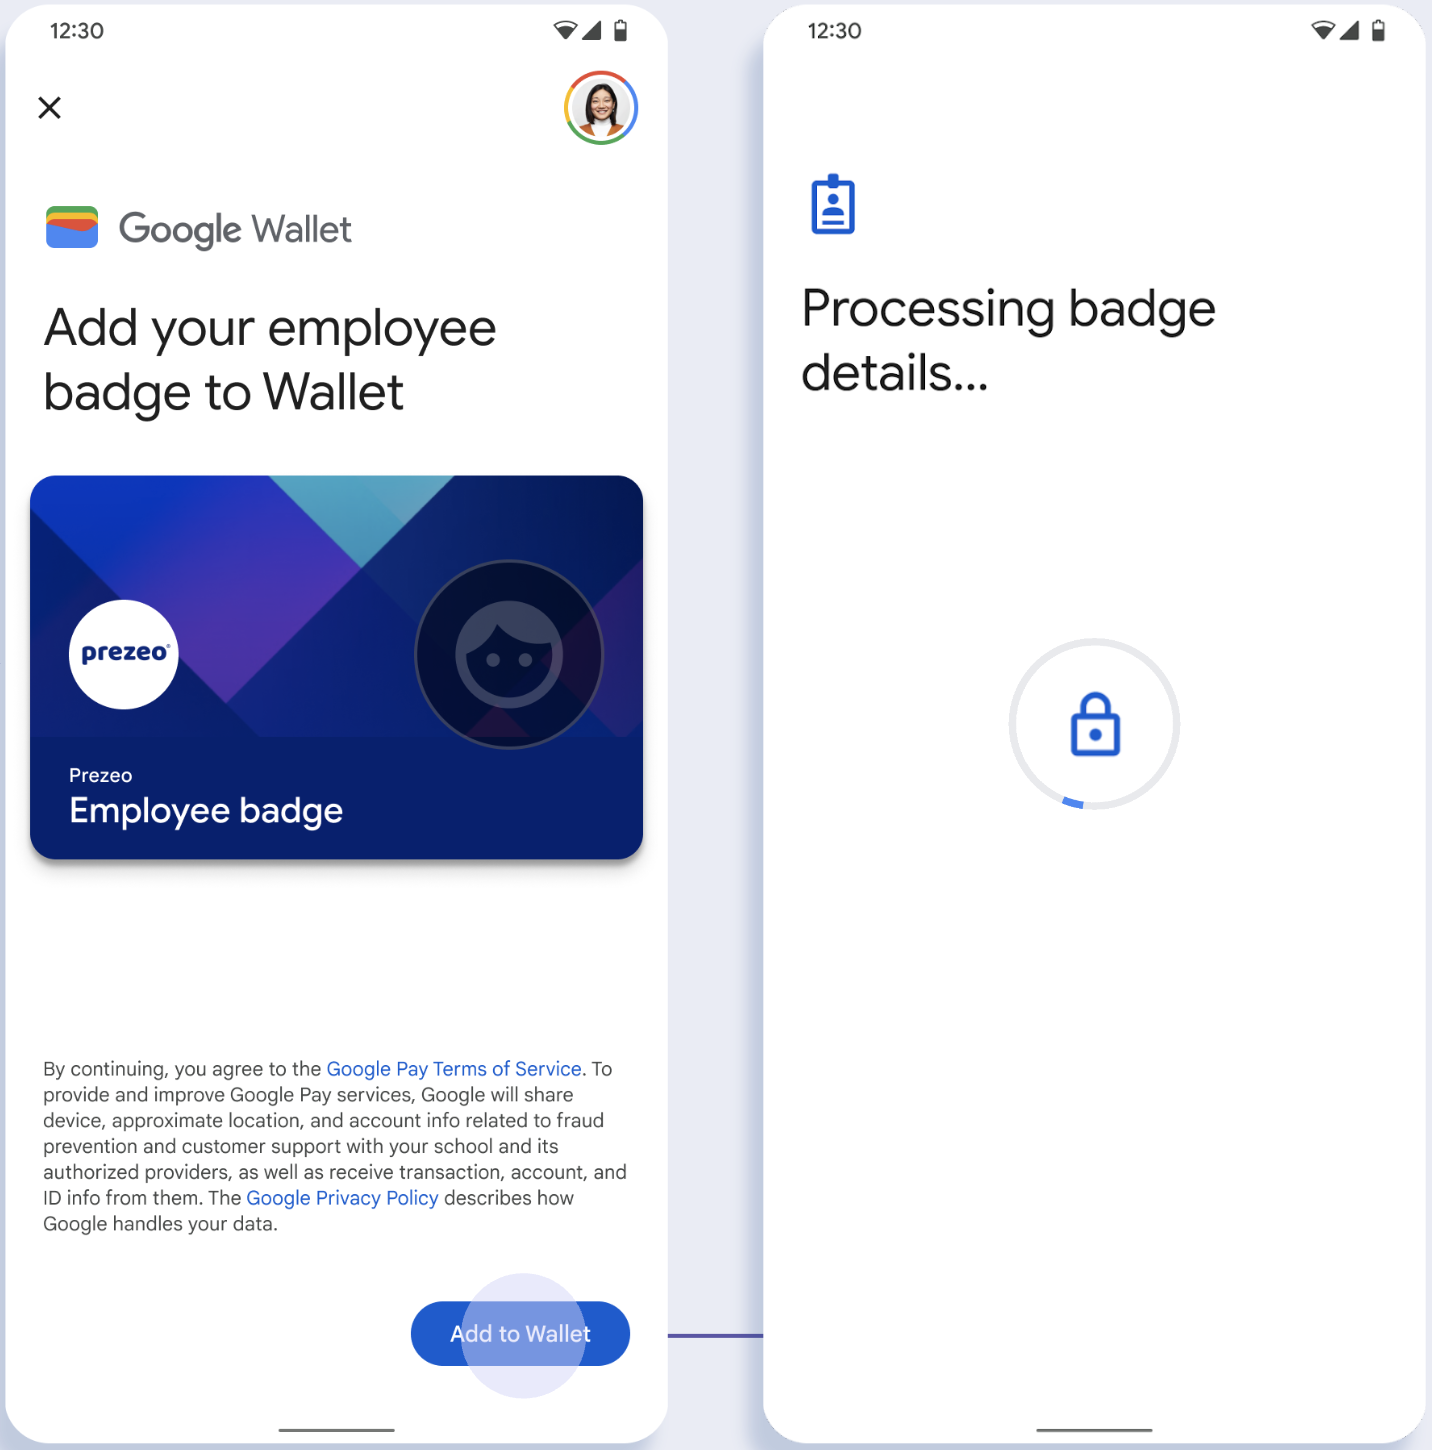 در صفحه اول، برنامه به Google Wallet متصل می شود. در صفحه دوم، کاربر شرایط خدمات را می پذیرد و ادامه می دهد.